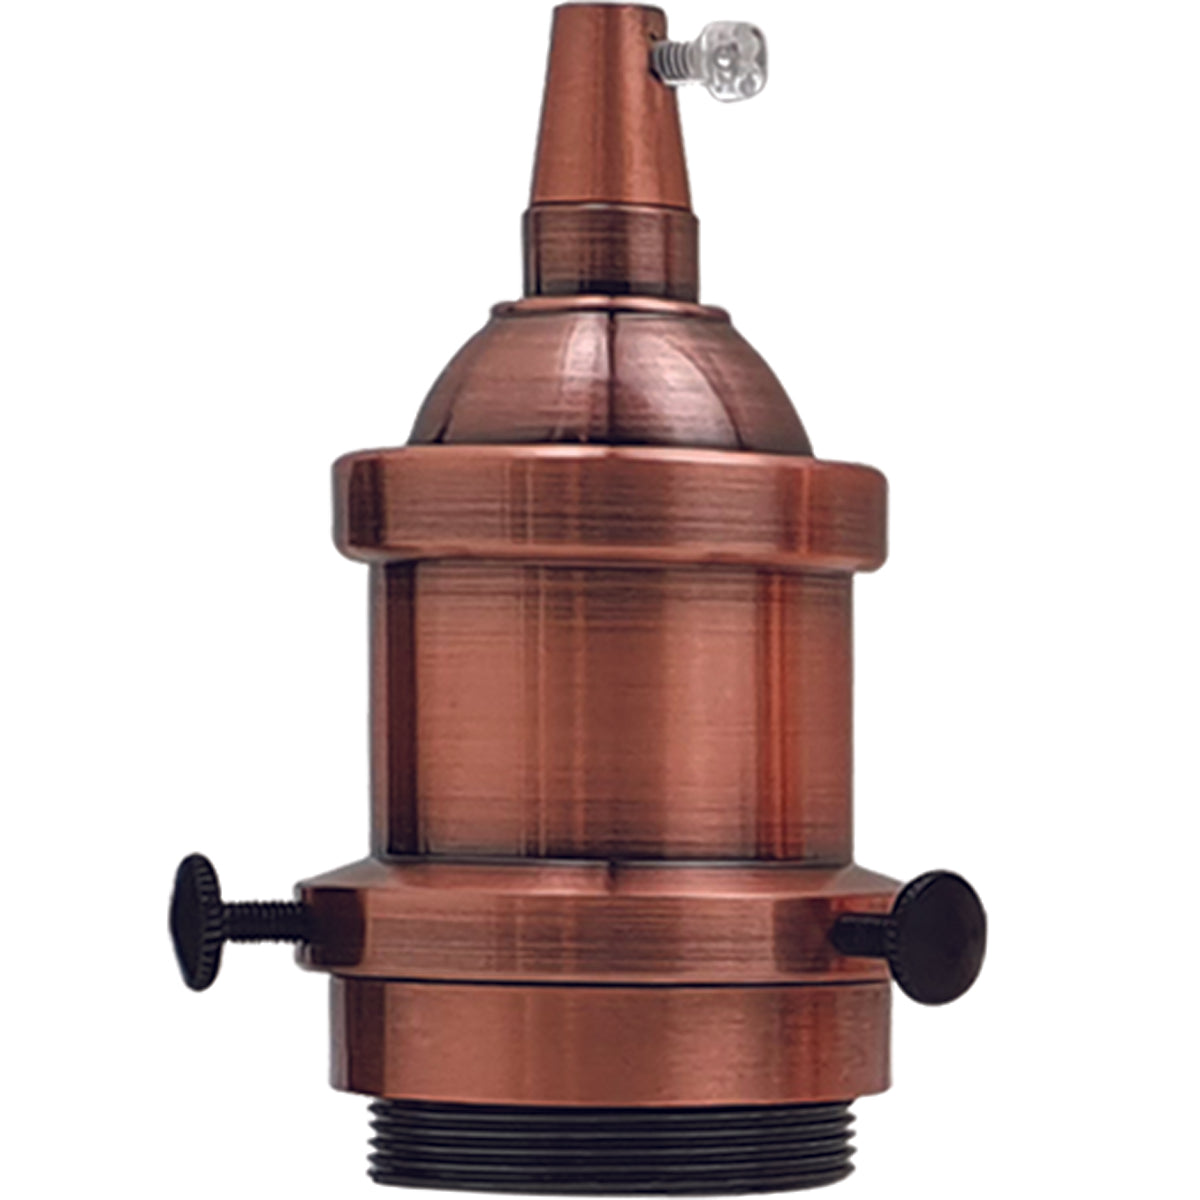 LEDSone industrial vintage ES E27 Batten Lamp Bulb Holder With Shade Ring Ideal for Vintage~2679 - LEDSone UK Ltd